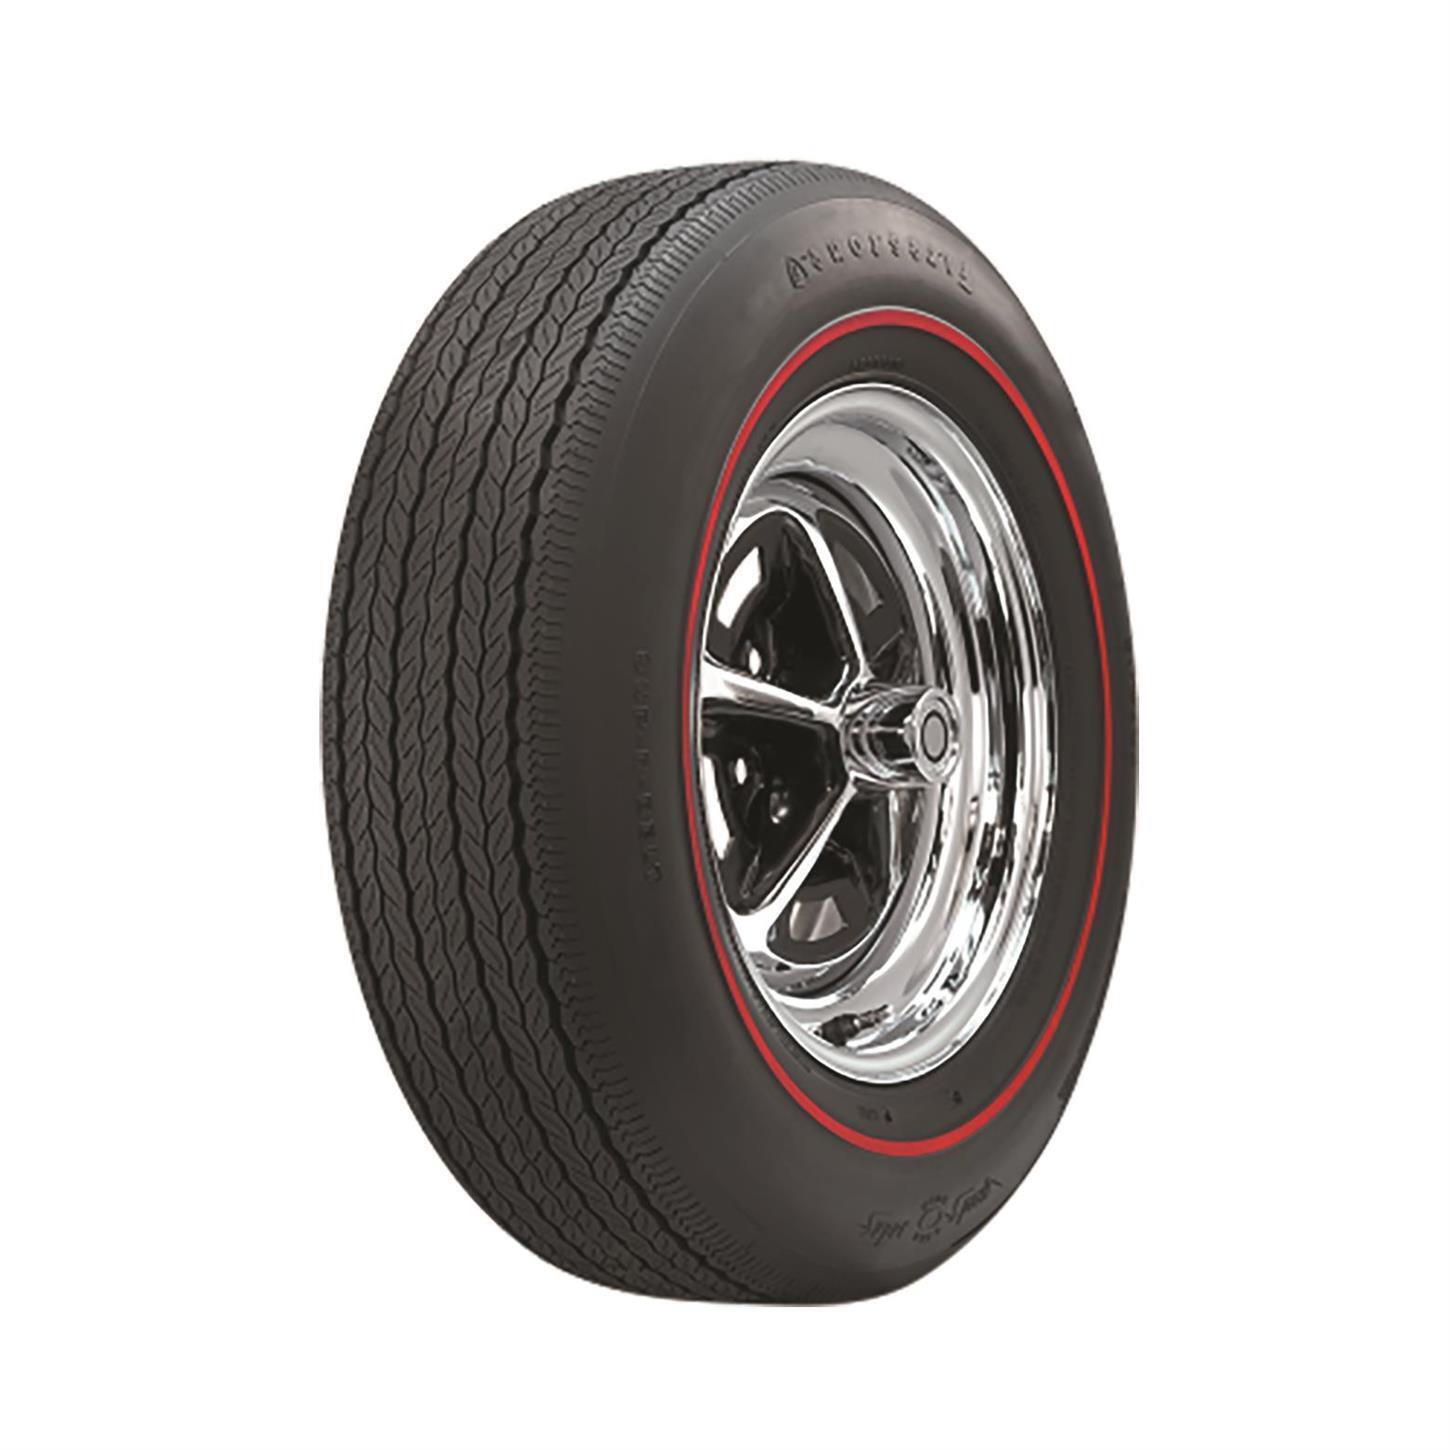 Firestone 54890 Wide Oval Tire, Redline, FR70-14